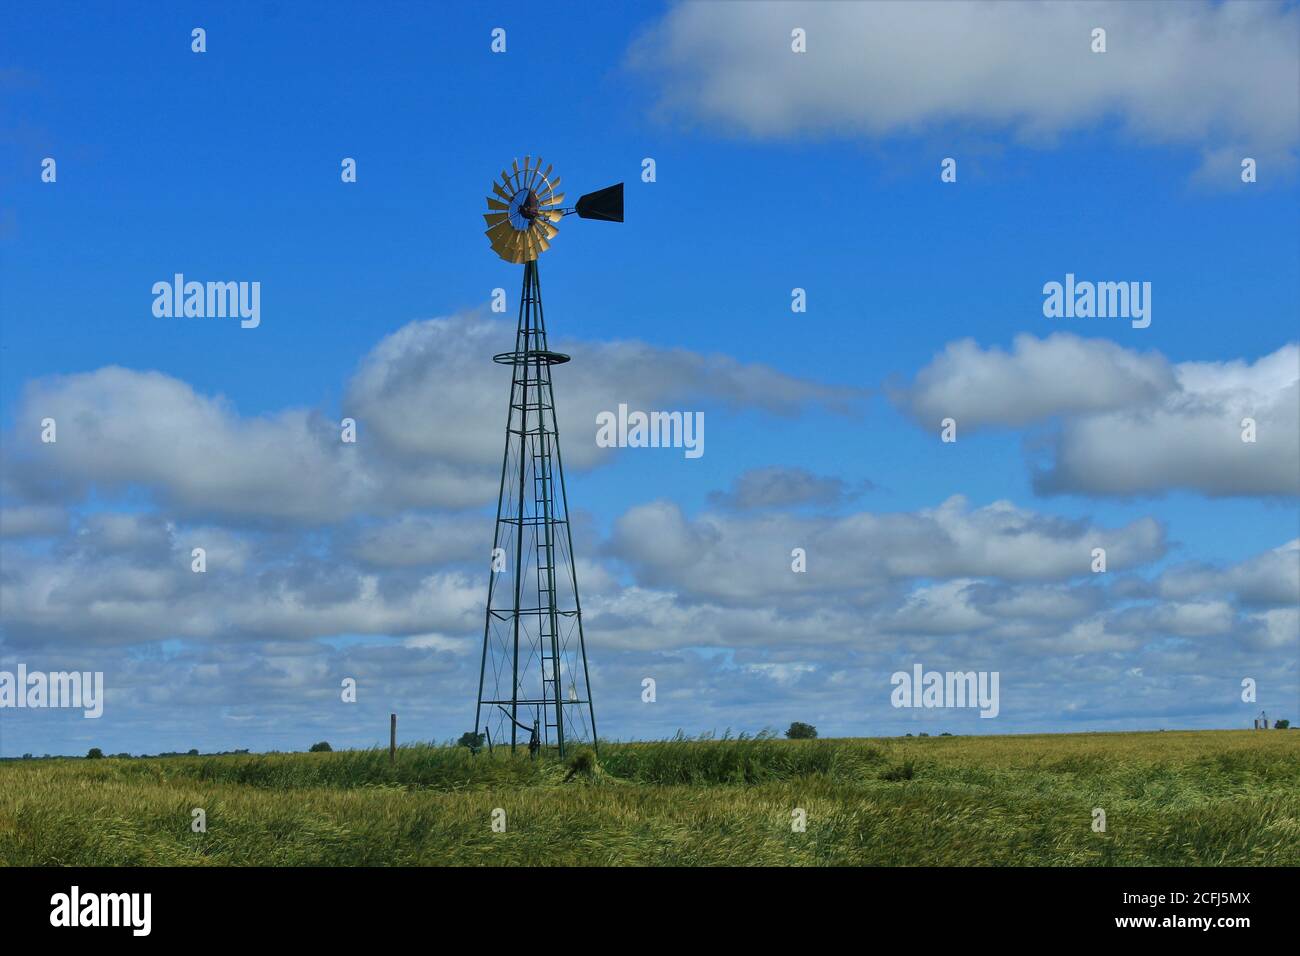 Farbenfrohe Kansas Himmel mit weißen geschwollenen Wolken mit Weizen in einem Feld nördlich von Lyon Kansas USA im Land. Mit einer Windmühle auf dem Feld. Stockfoto